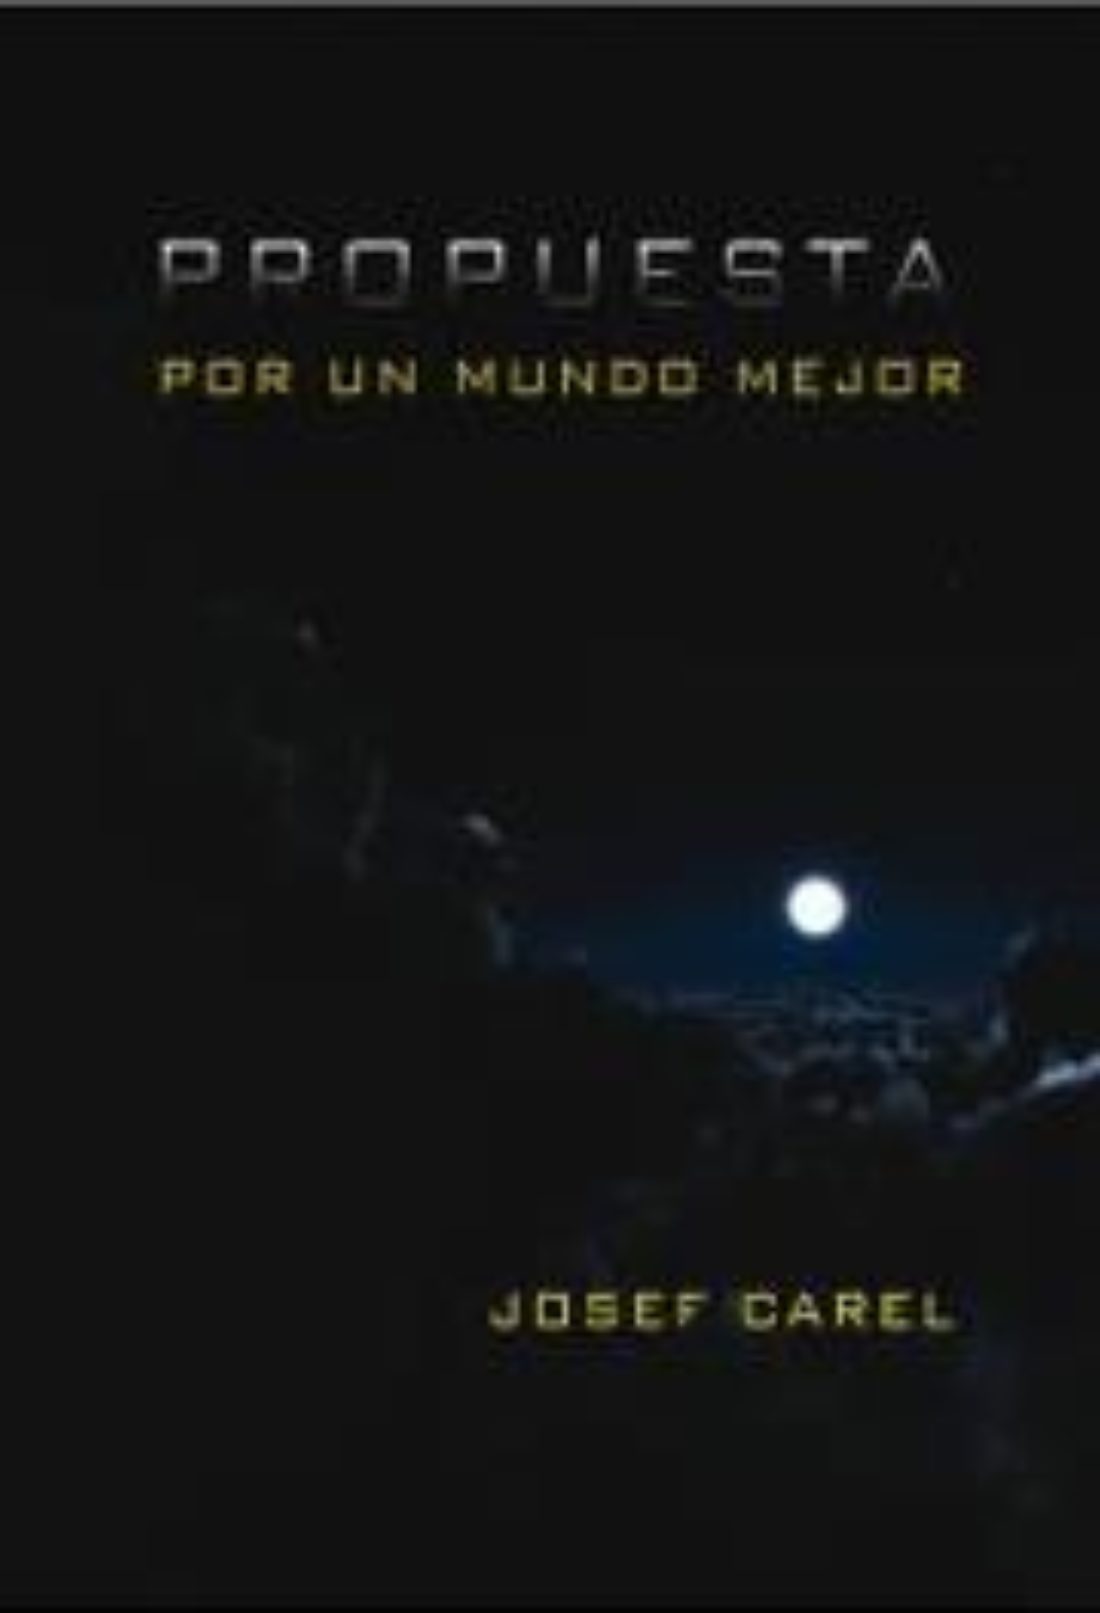 LaMalatesta: Propuesta por un mundo mejor, Charla-presentación del libro de Josef Carel.